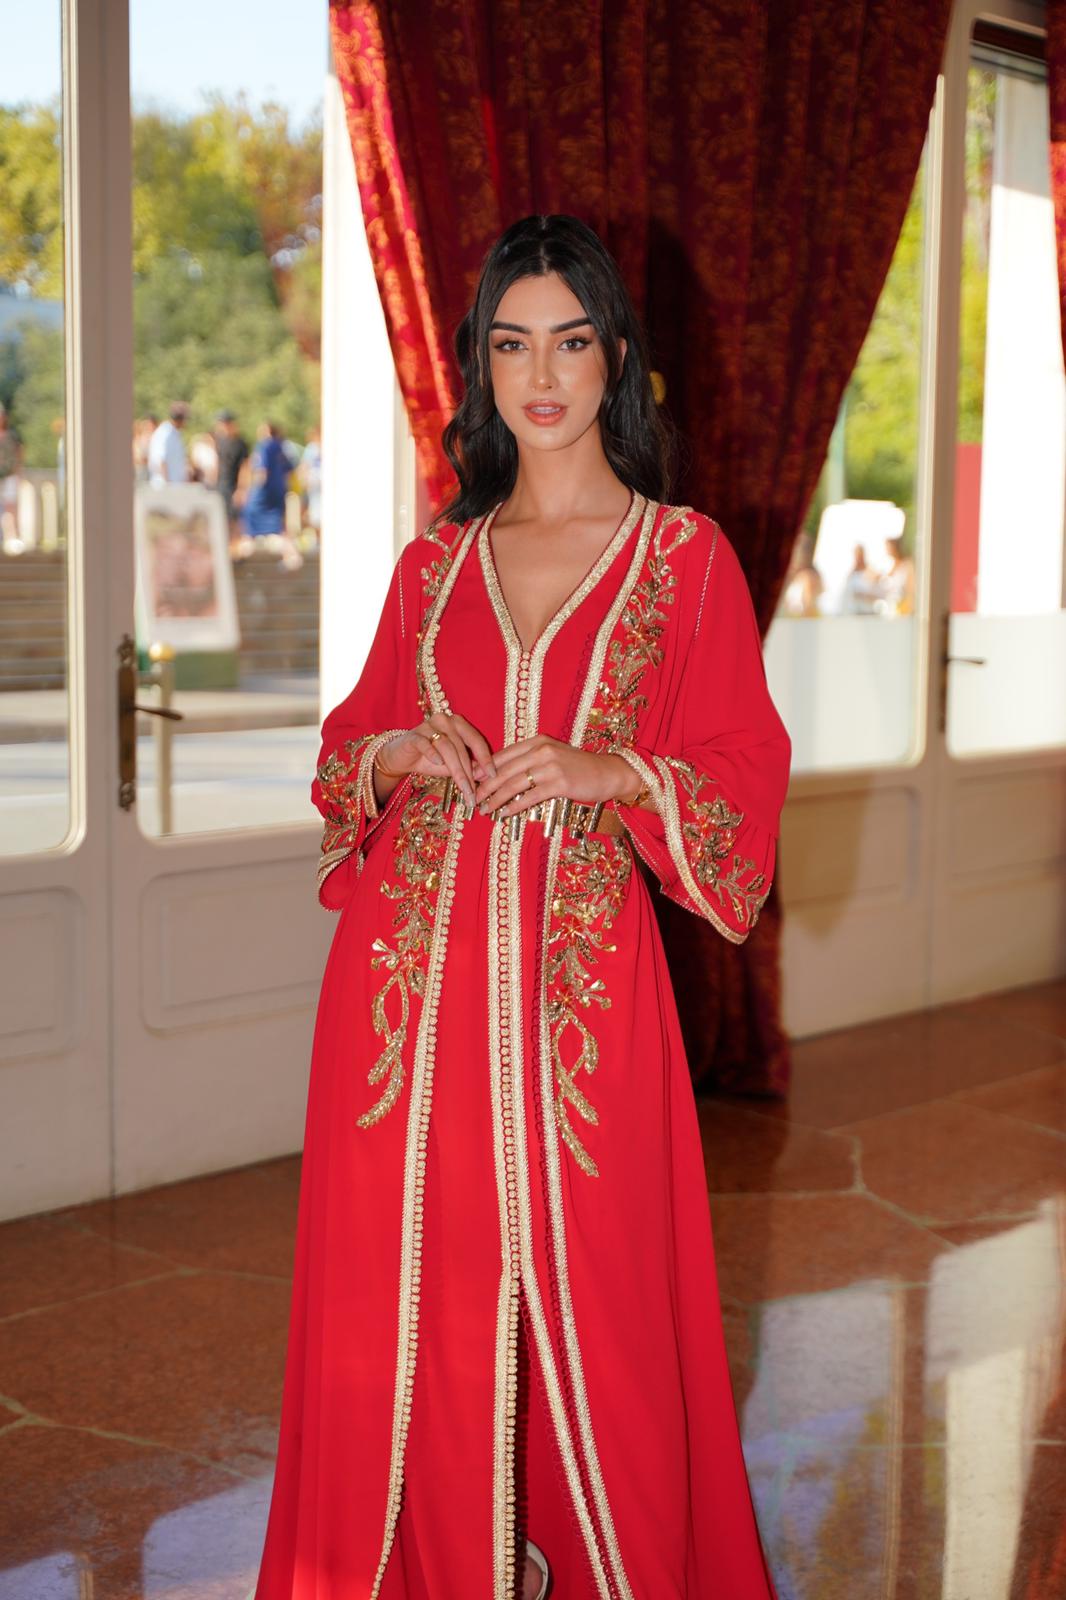 Venise .. Sofia Saidi illumine le tapis rouge avec un Caftan marocain